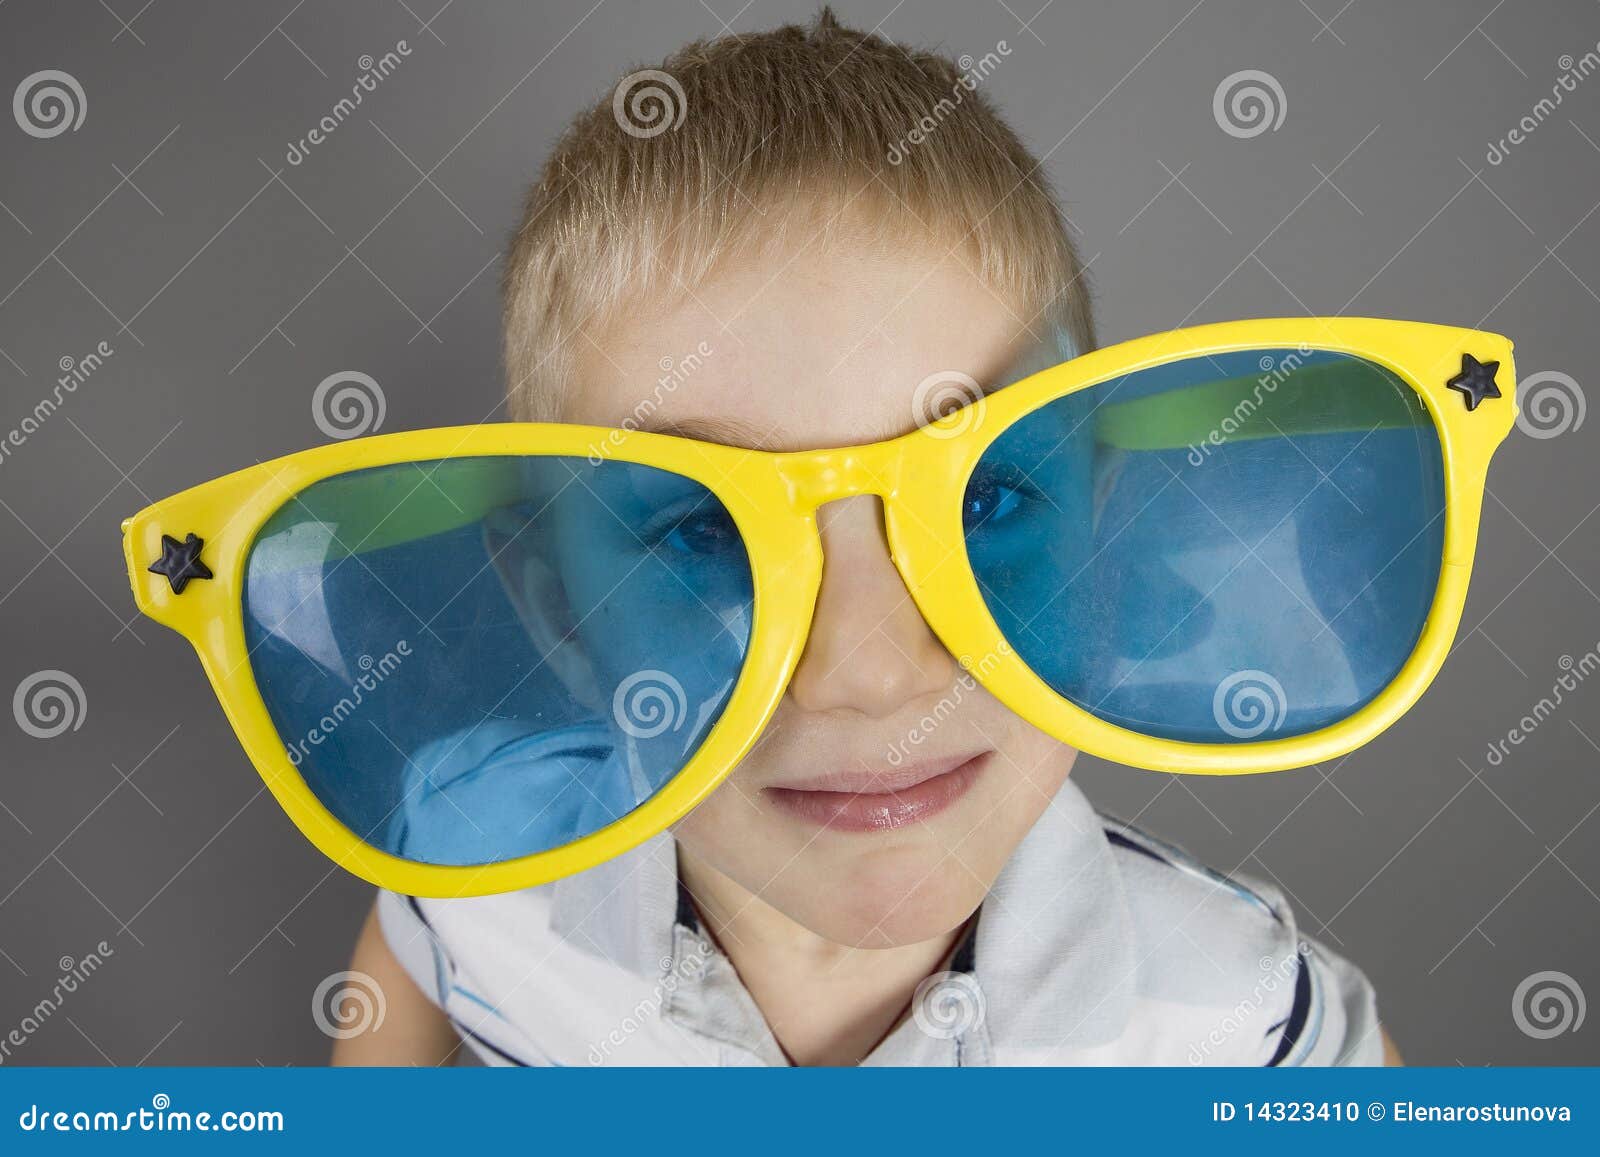 Мальчик с большими очками. Мальчик в очках. Детские очки для мальчика. Синие очки для мальчиков. Очки большие мальчики.